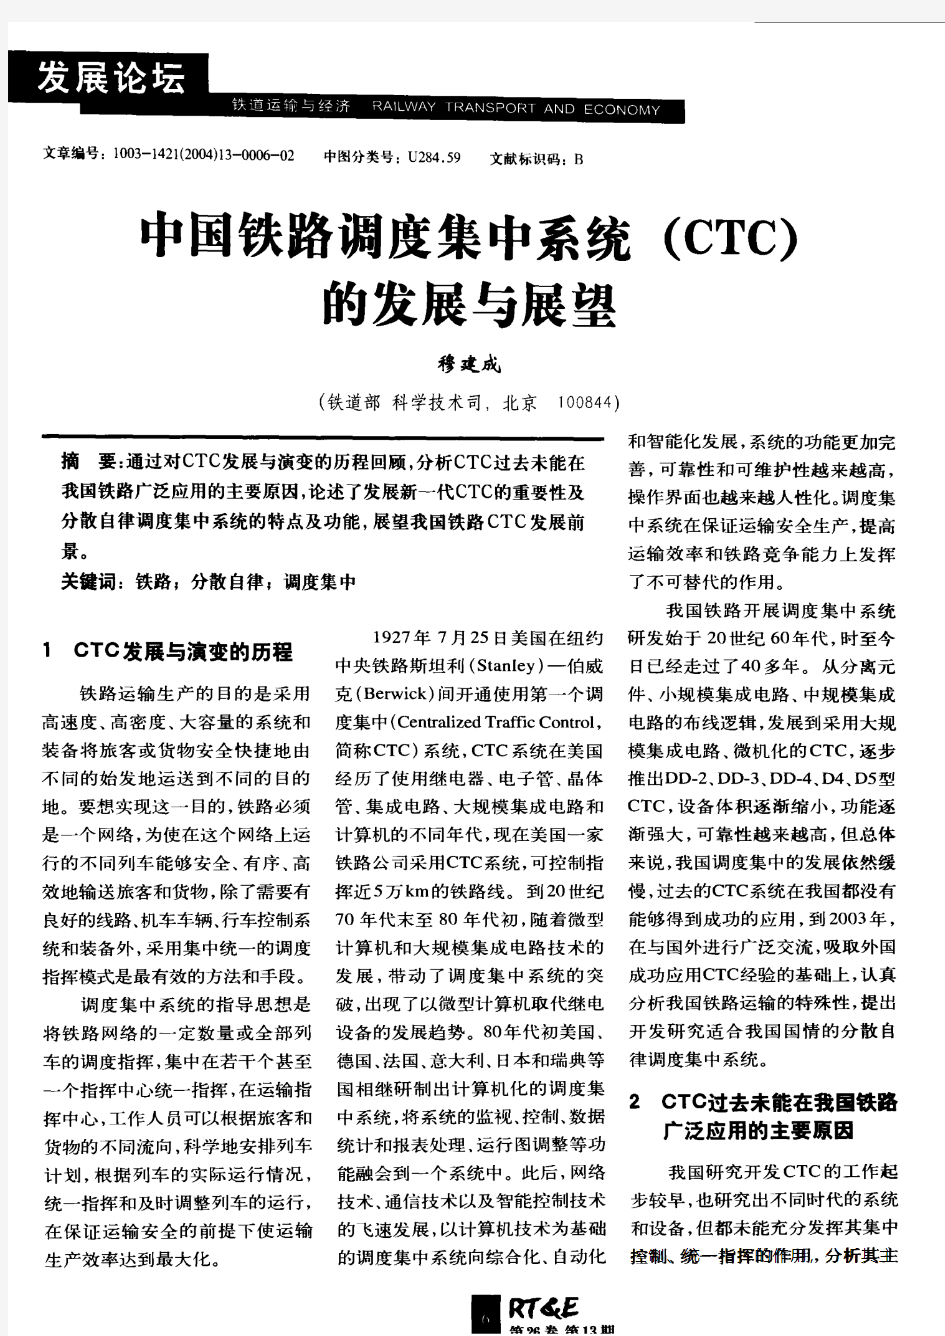 中国铁路调度集中系统(CTC)的发展与展望